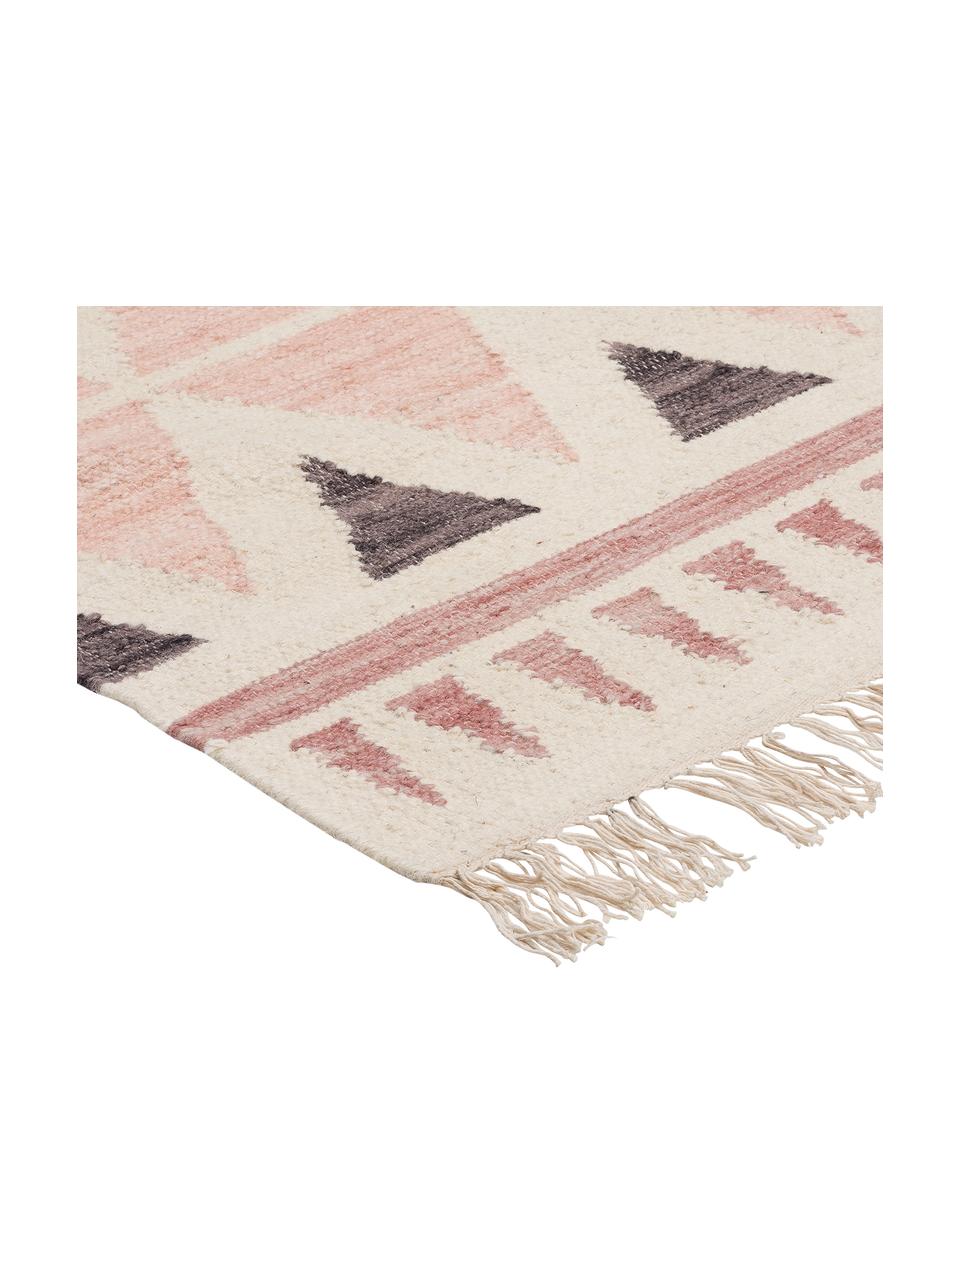 Ručne tkaný kelim koberec z vlny Billund, bledoružová/krémová, Ružová, krémová, tmavosivá